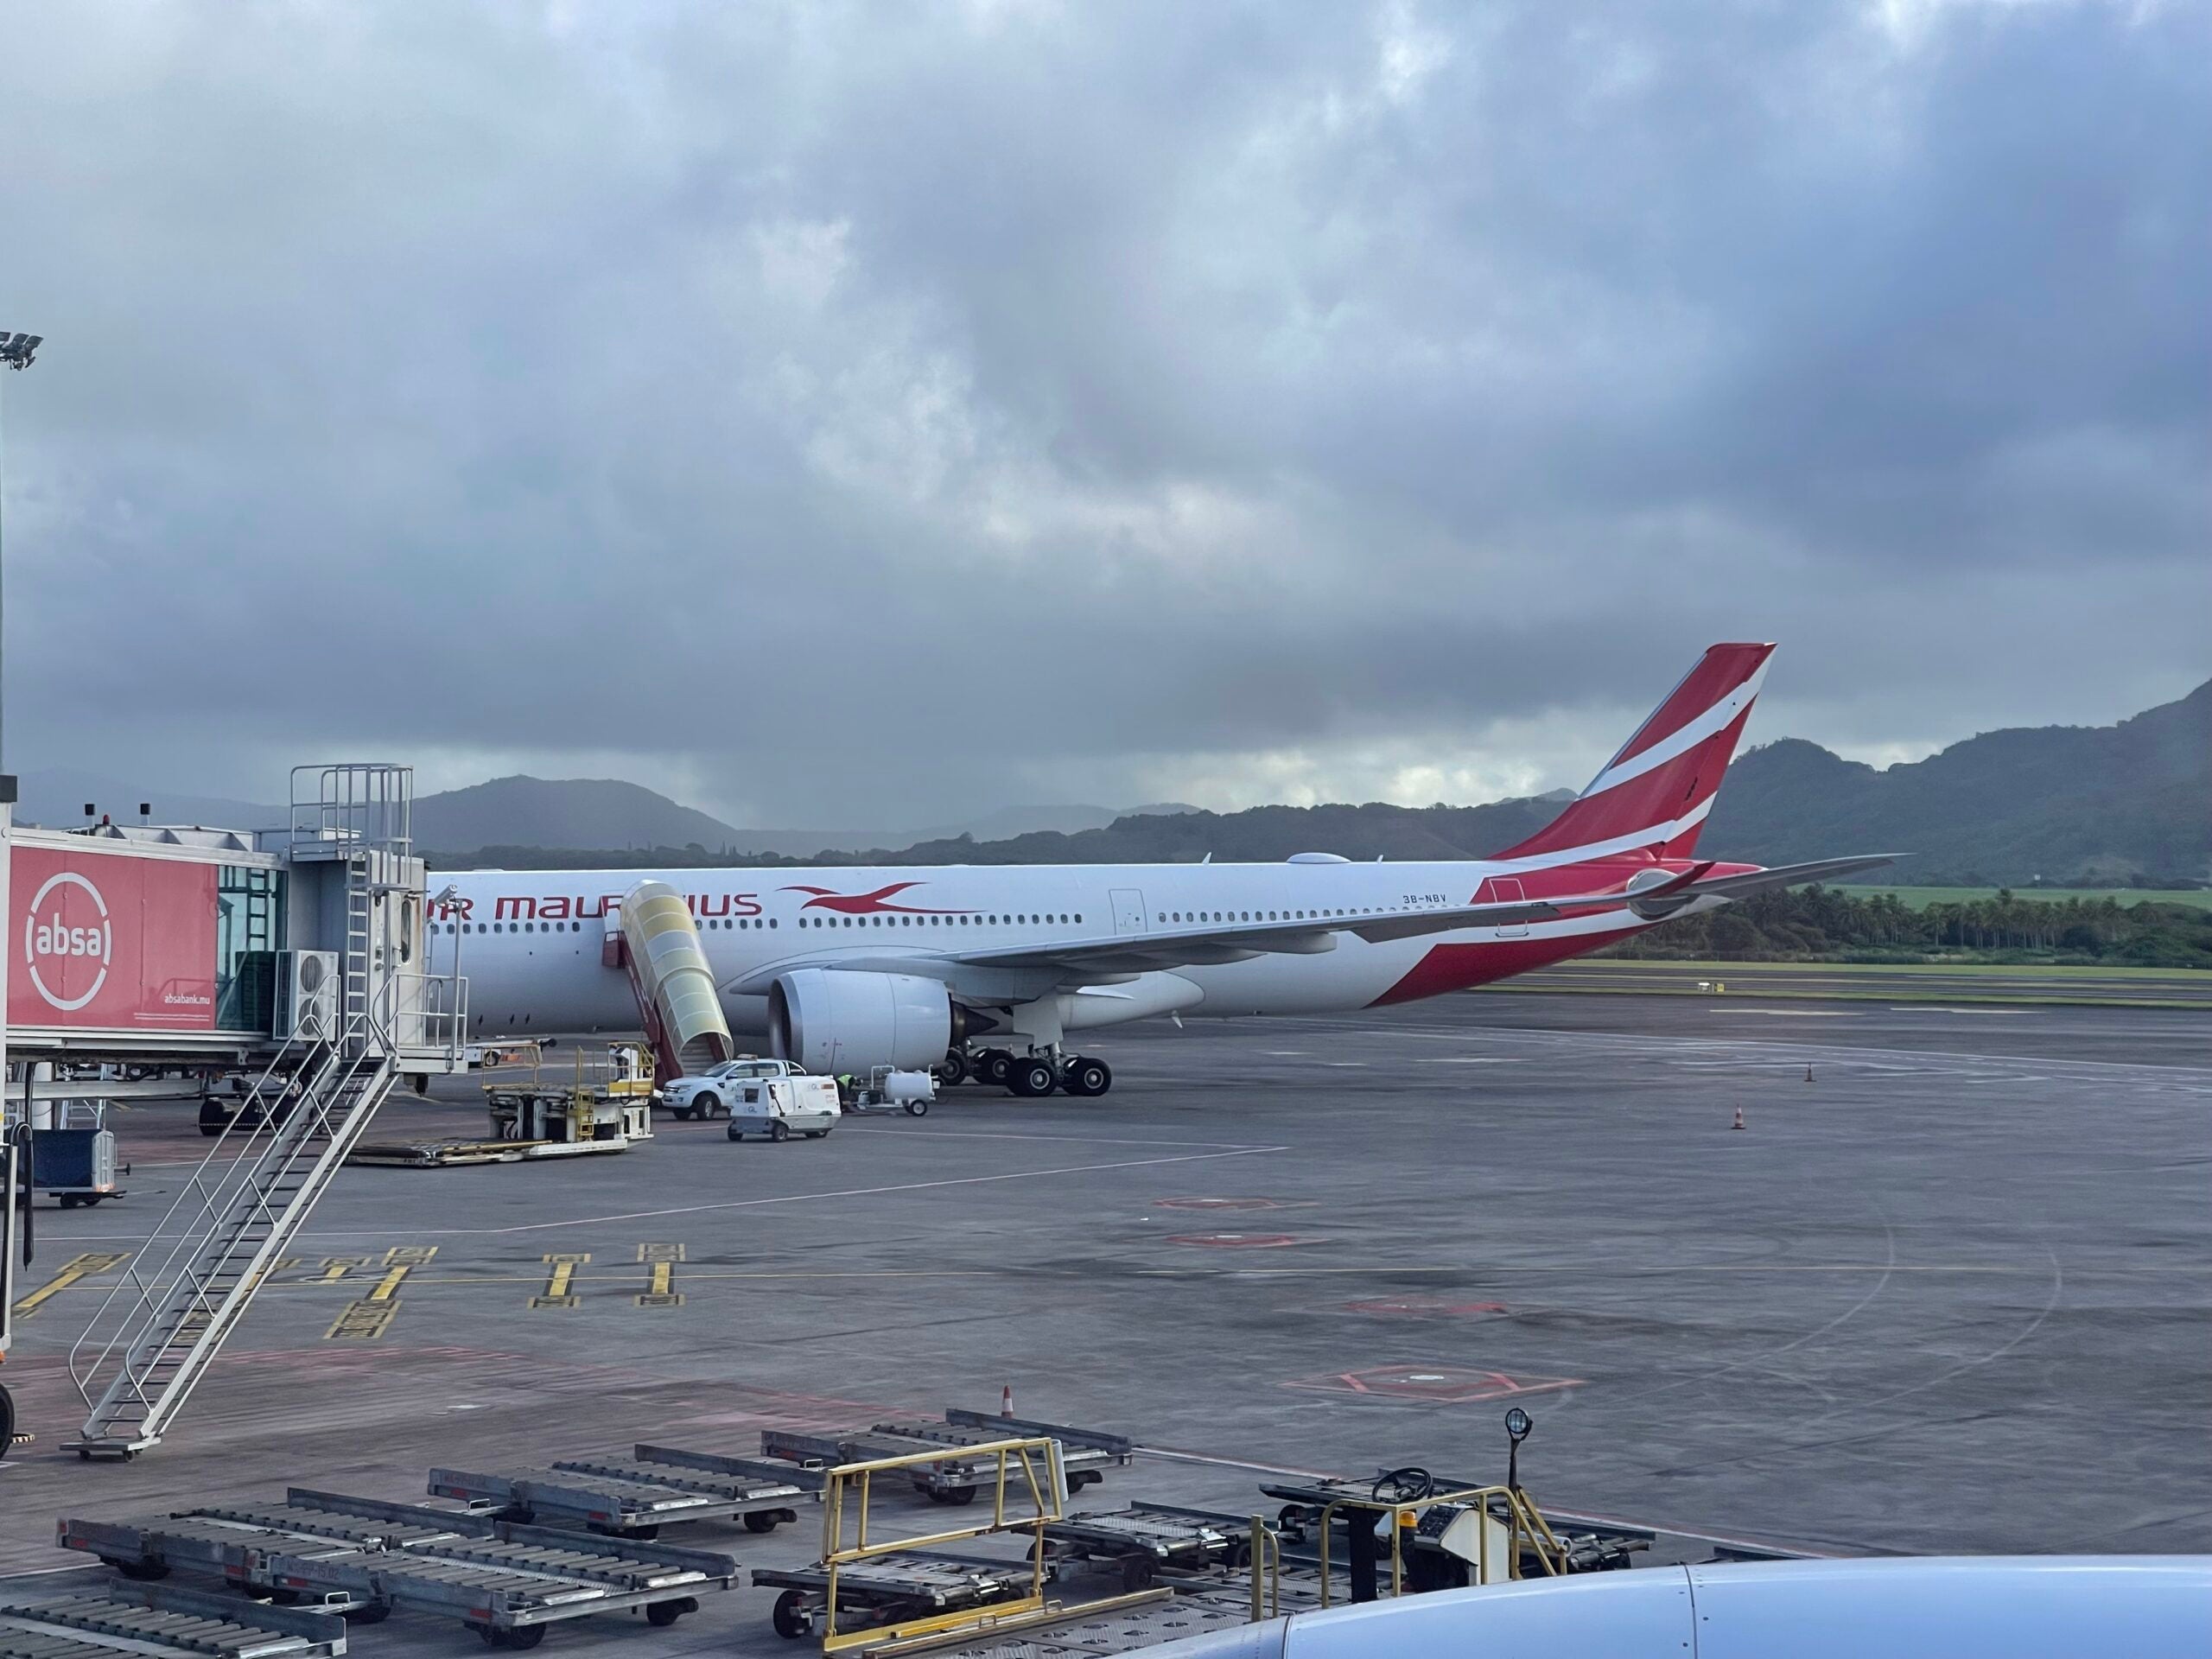 Air Mauritius A330-900neo